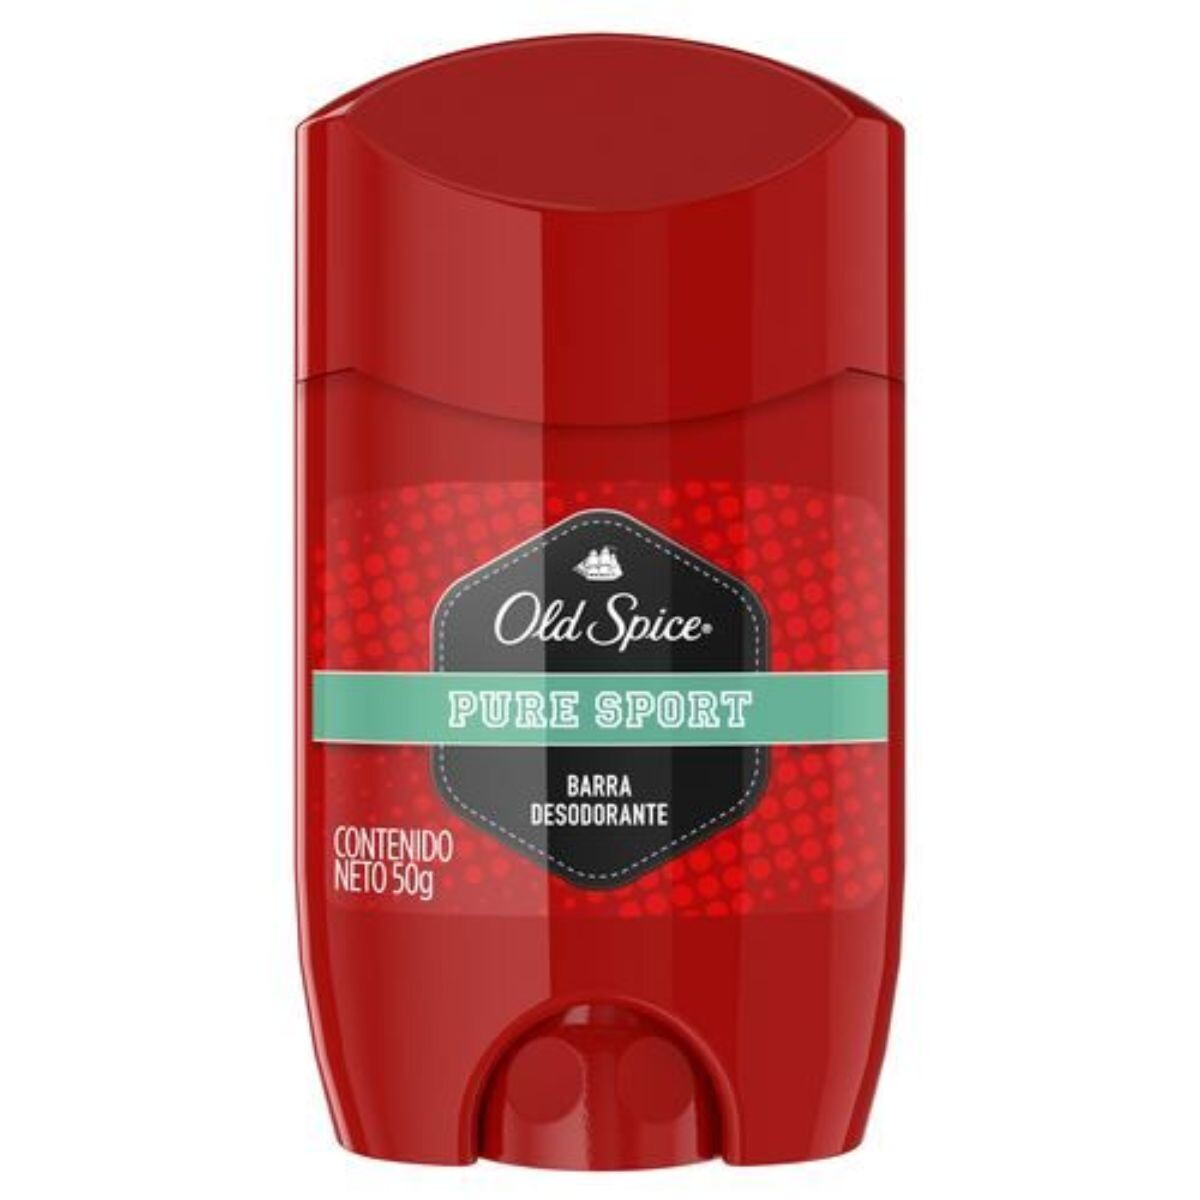 Desodorante Old Spice en Barra Pure Sport 60 GR 